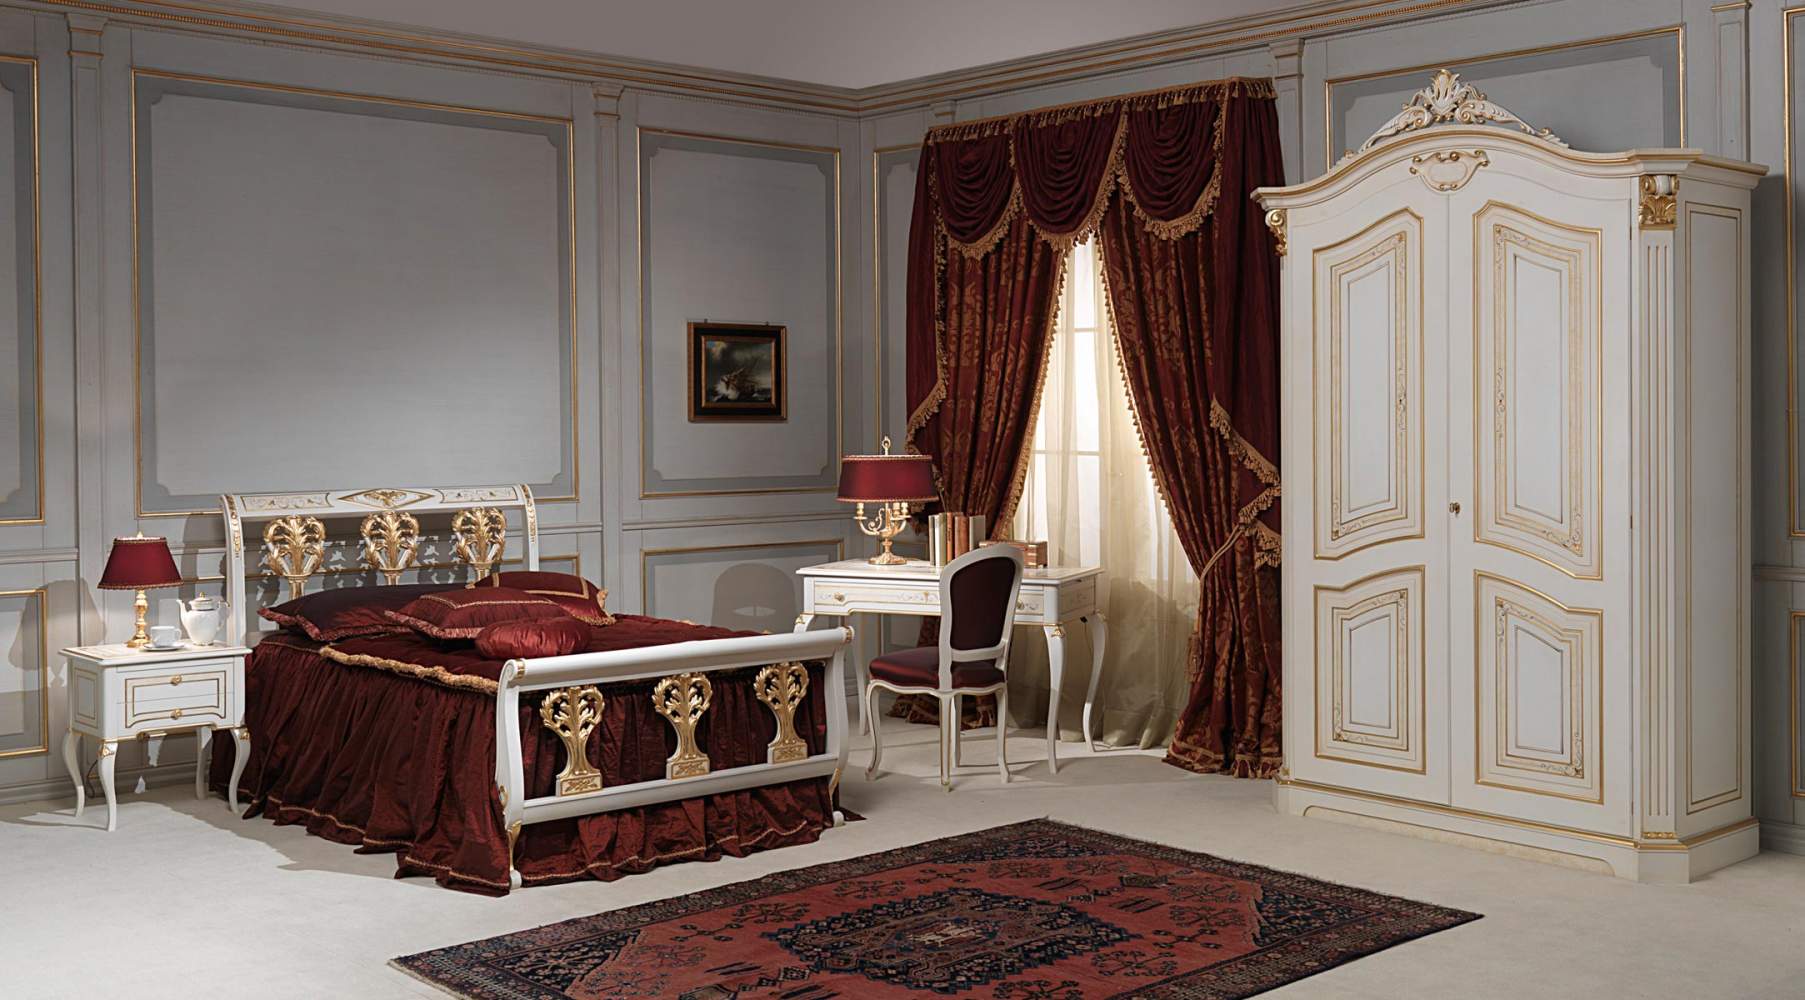 Camera da letto classica Rubens in stile 700 francese